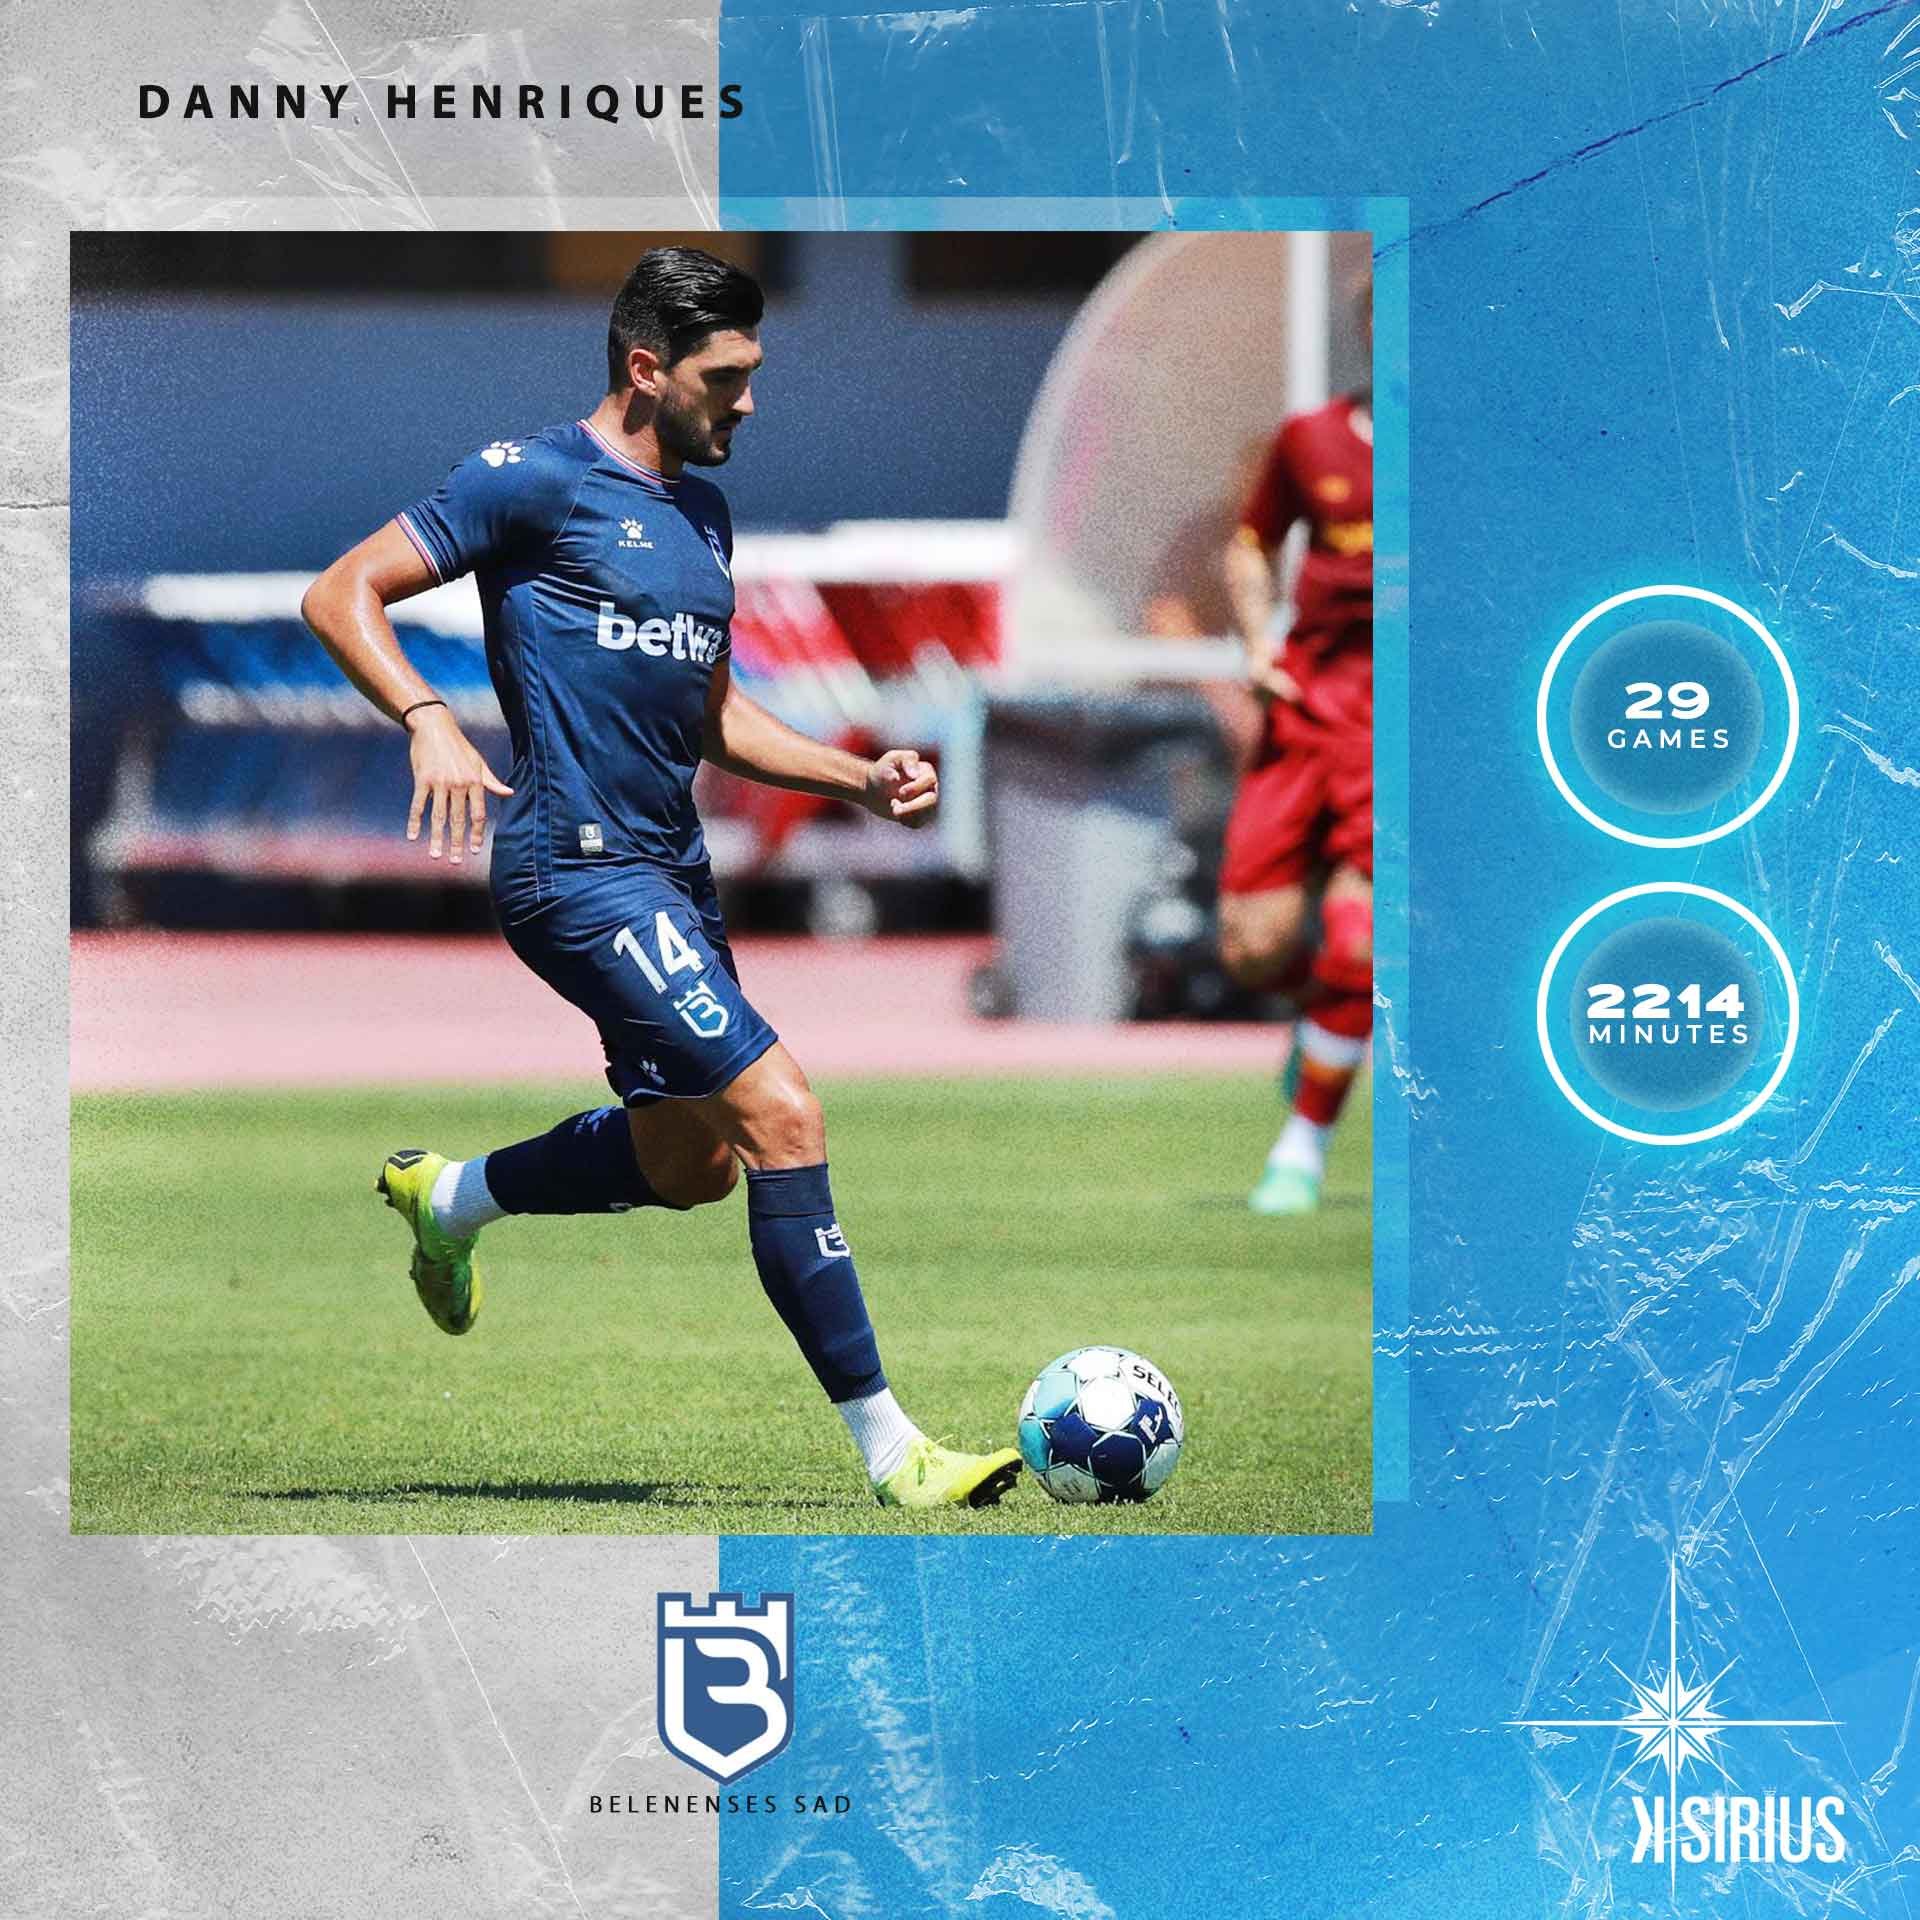 Stats: Danny Henriques (Belenenses SAD)